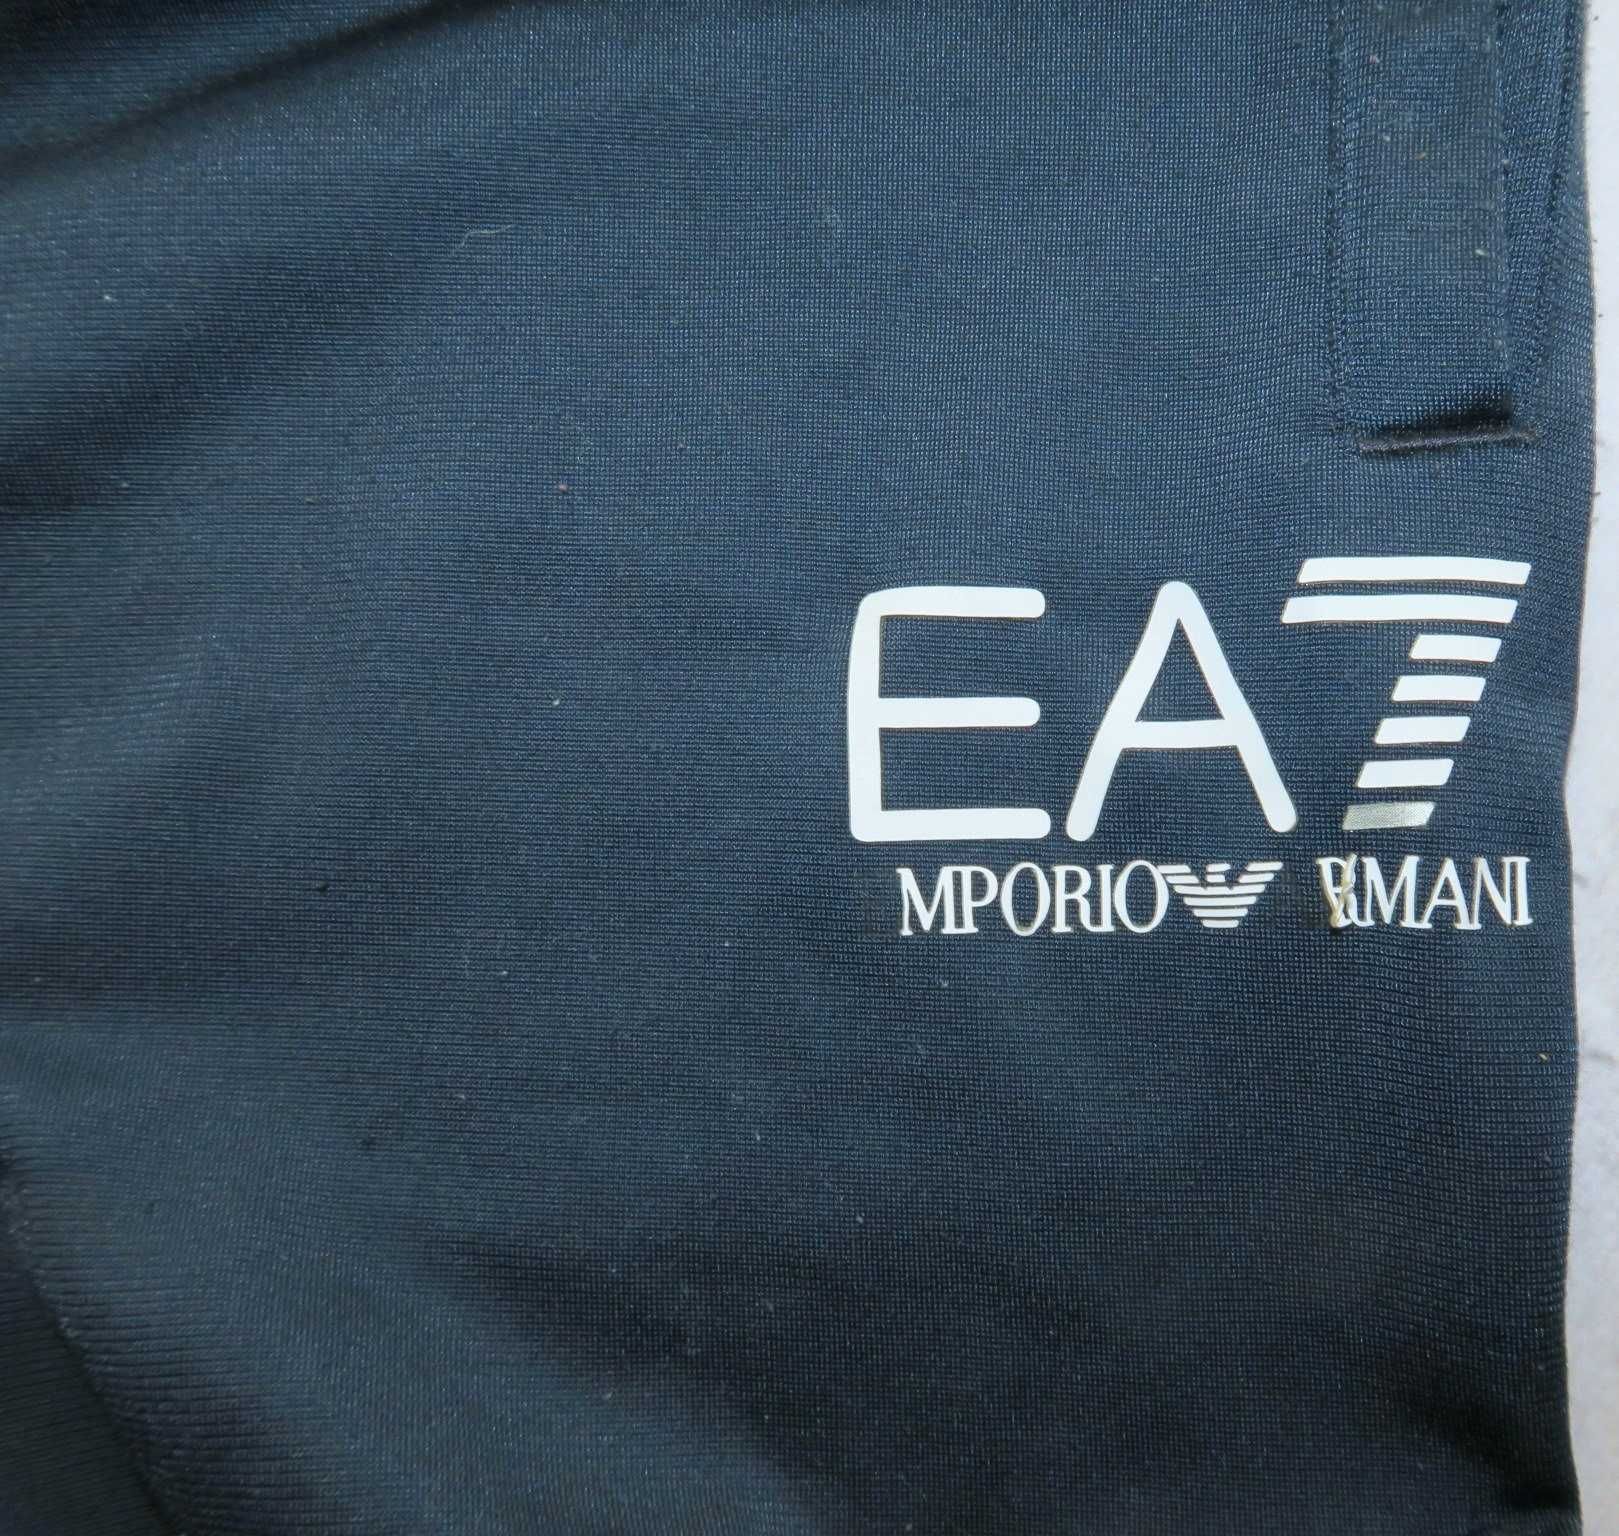 Emporio Armani spodnie dresowe zwężane L